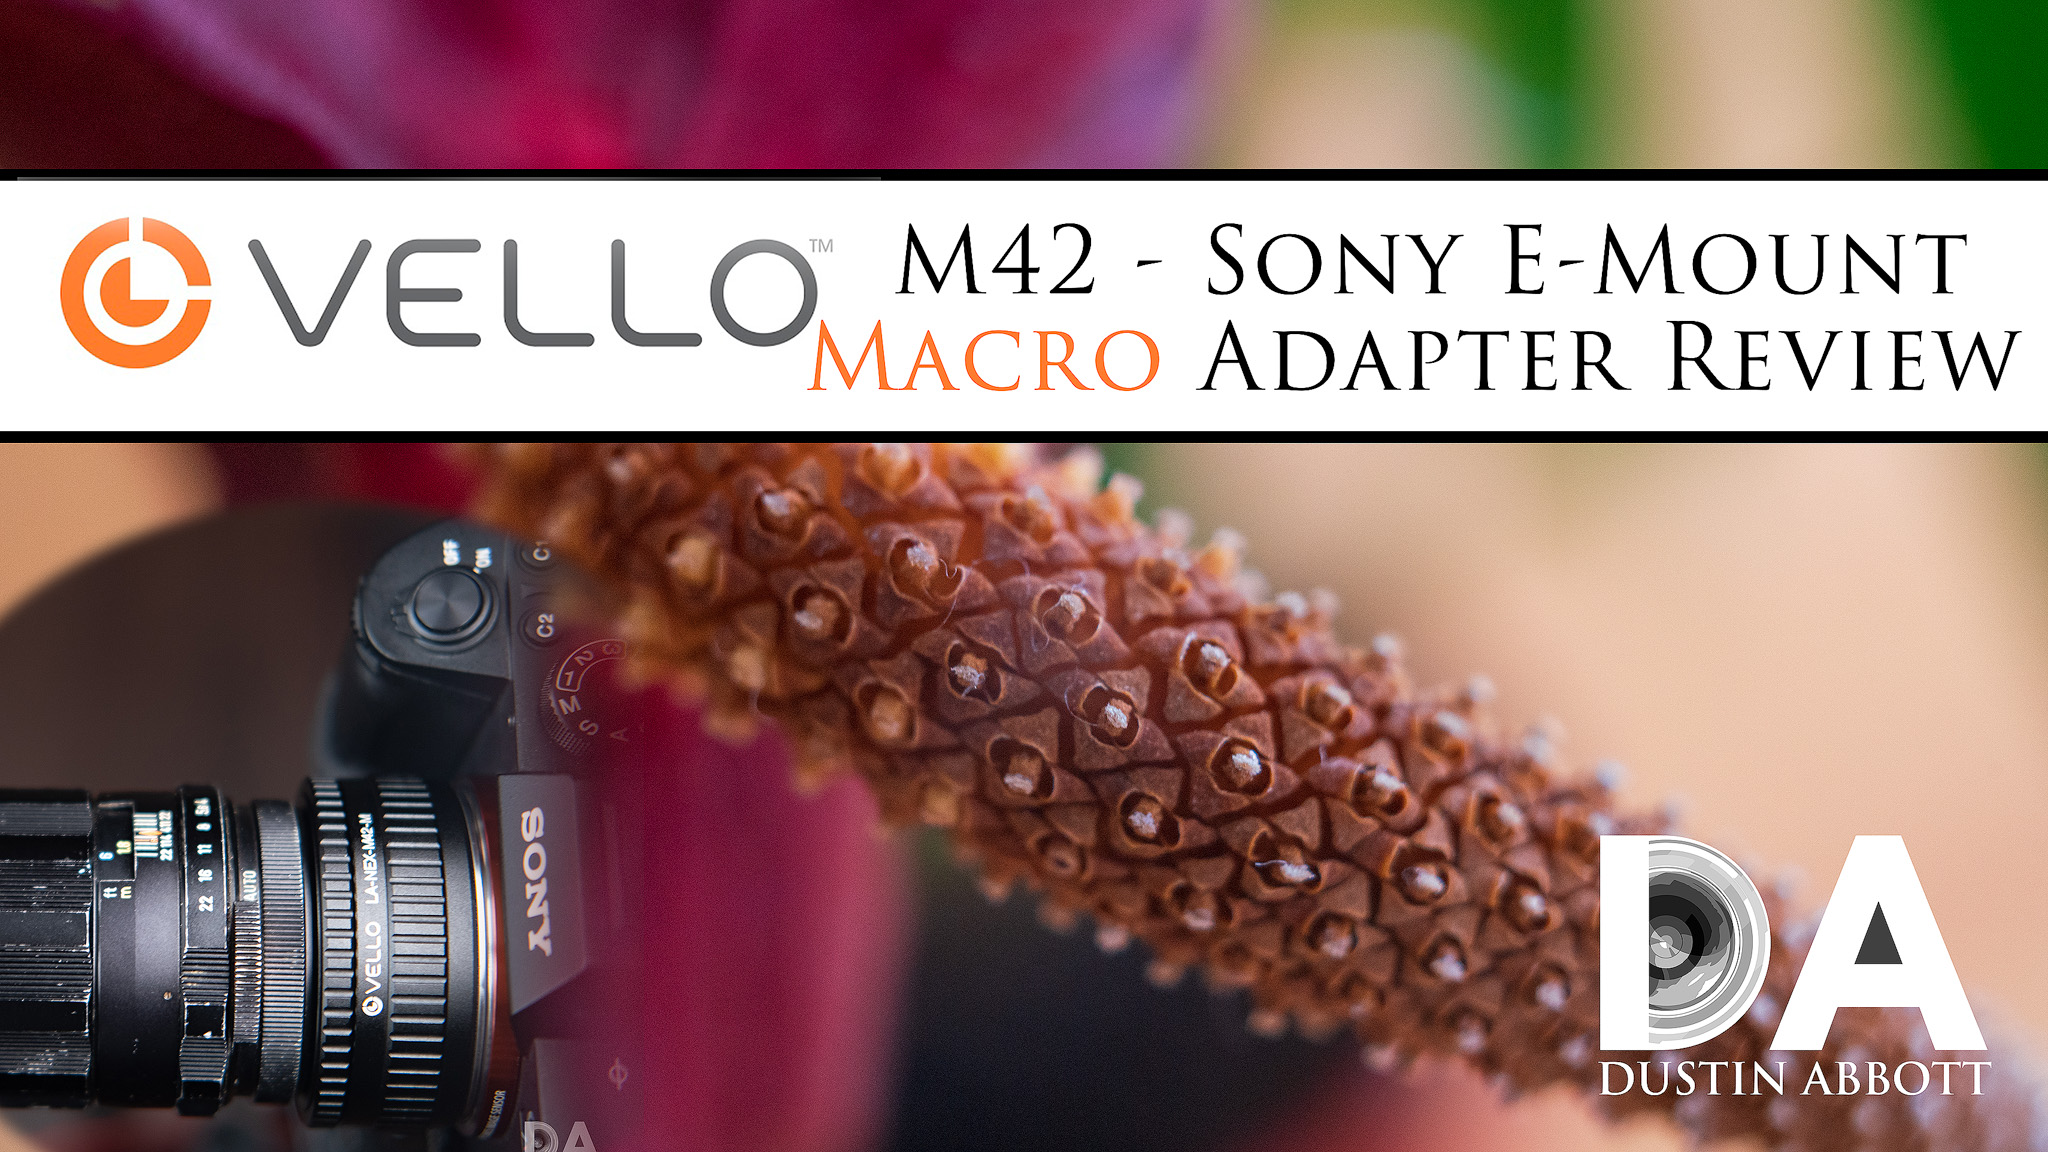 Onderscheiden eerste Wiskundig Vello M42 to Sony E-mount Macro Adapter Review - DustinAbbott.net